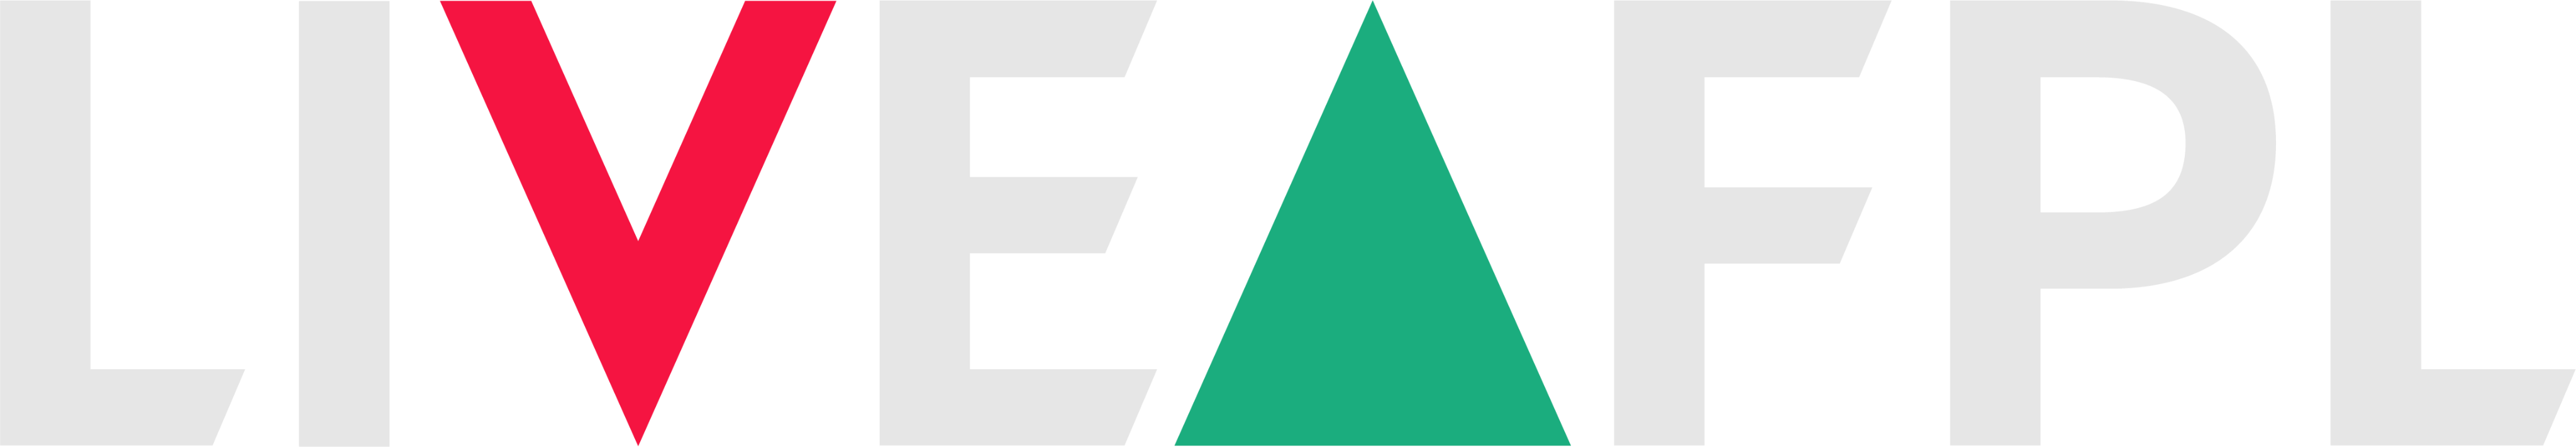 livefpl logo